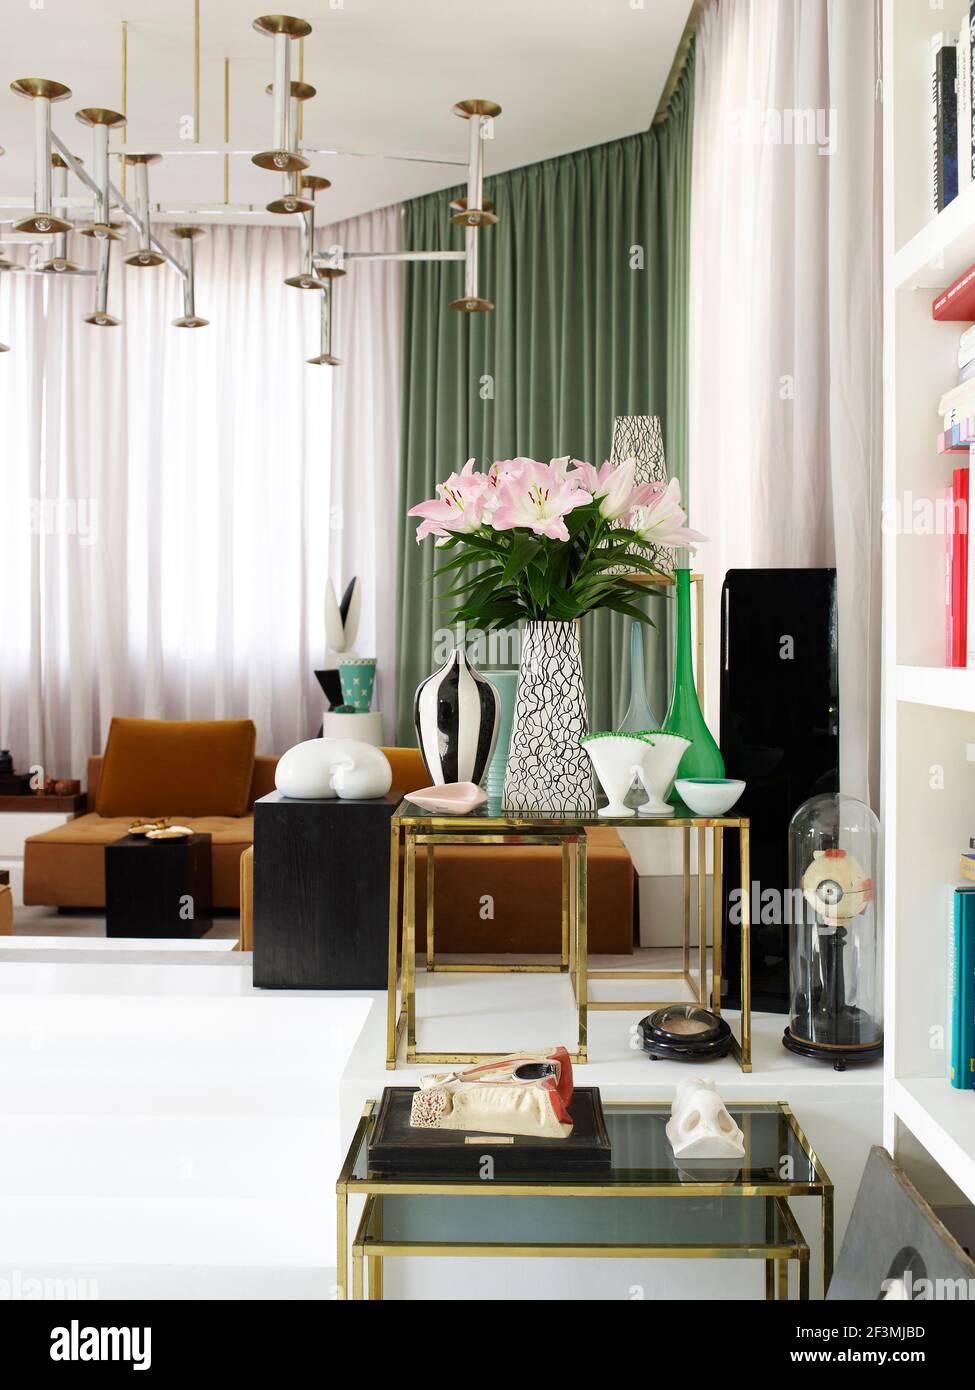 Kollektion von Vasen auf Metalltischen im opulenten Wohnzimmer In Französisch zu Hause Stockfoto